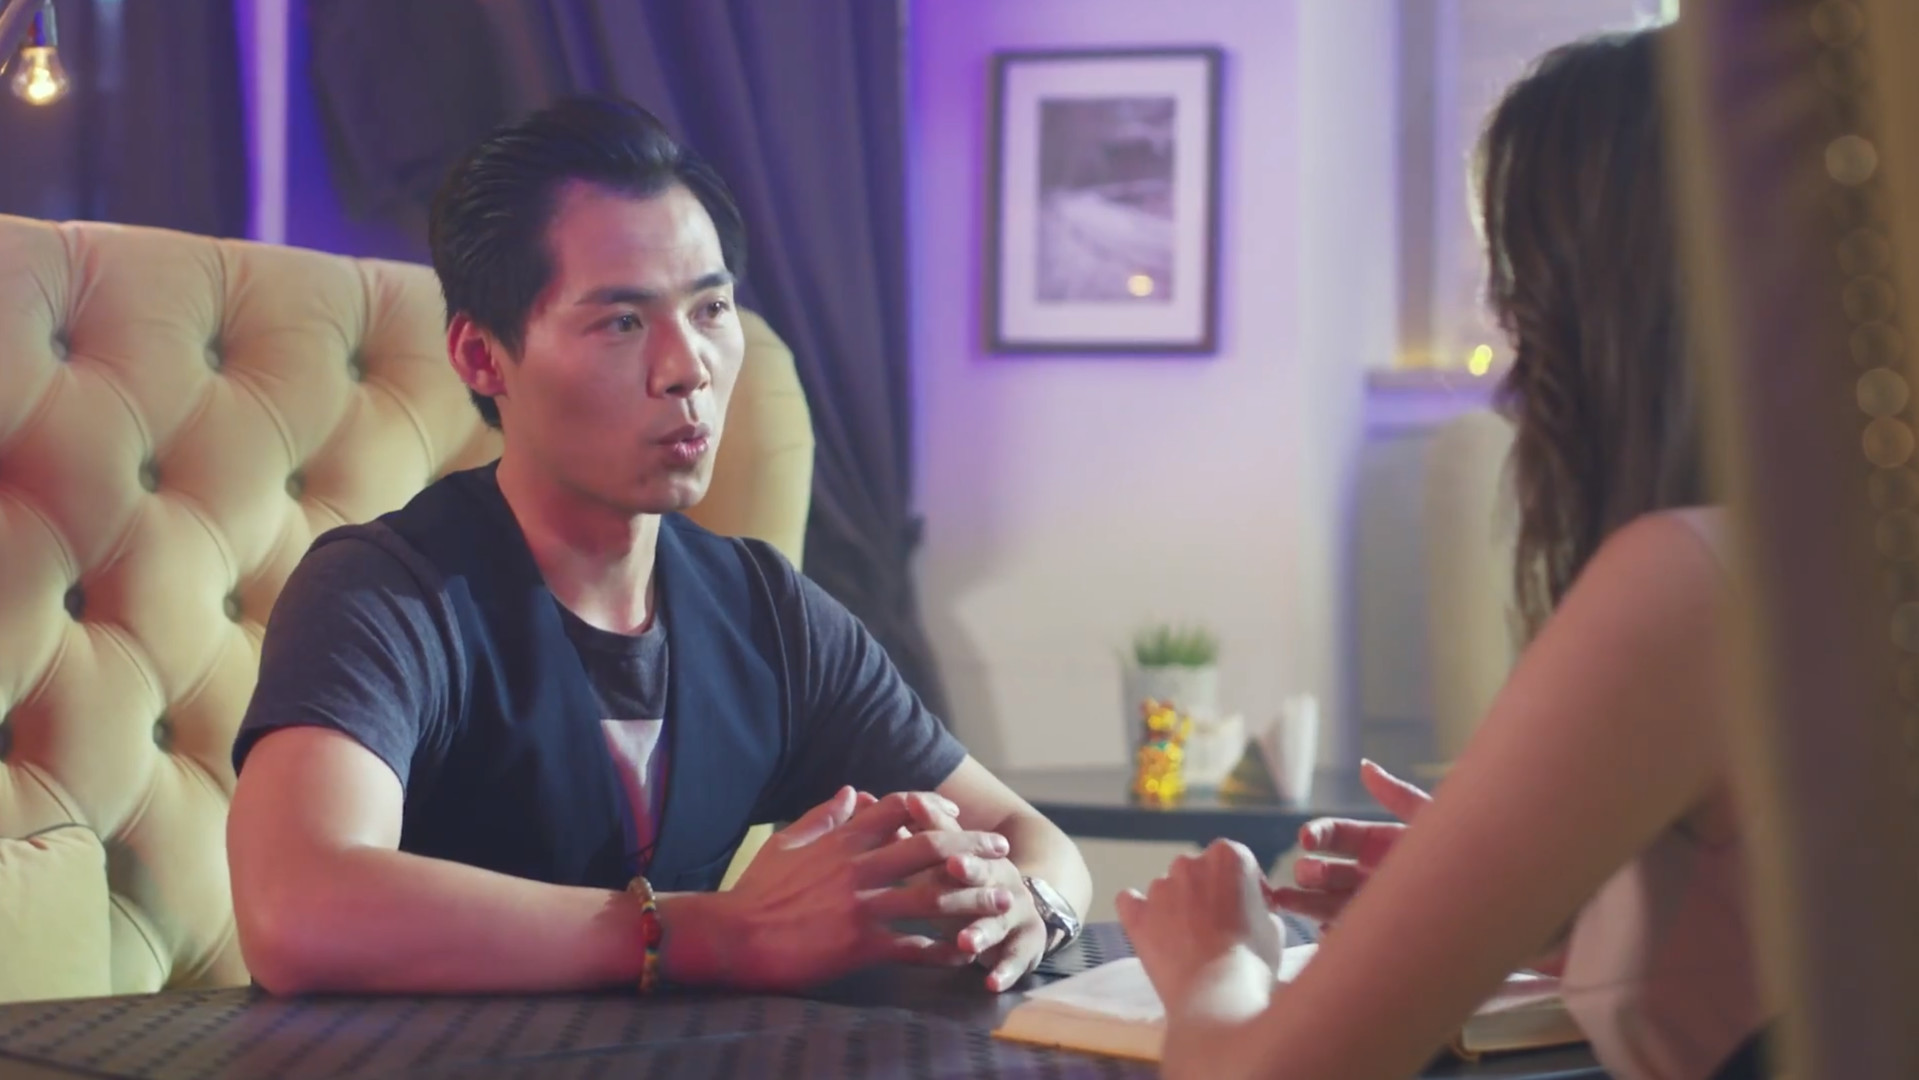 Super Seducer 2 explores cross-cultural dating